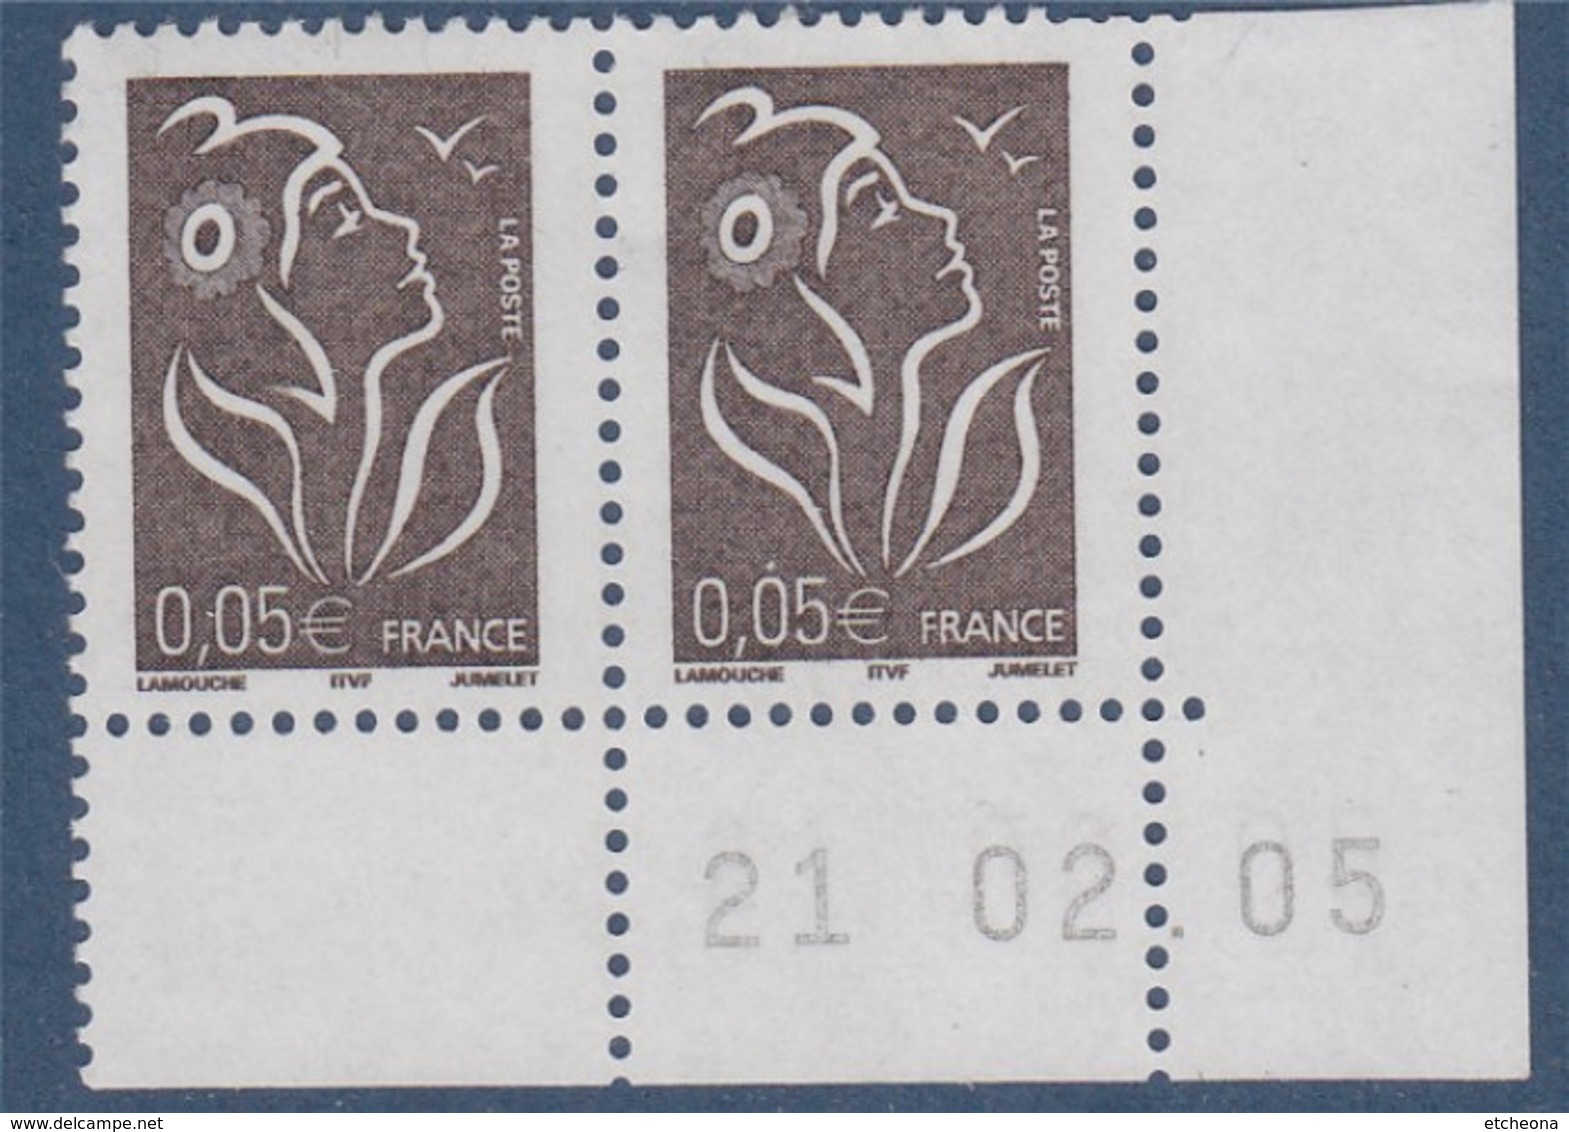 Lamouche 0.05€ Paire N°3754 Neuf En Coin De Feuille Daté 21.2.05 ITVF - 2004-2008 Marianne De Lamouche